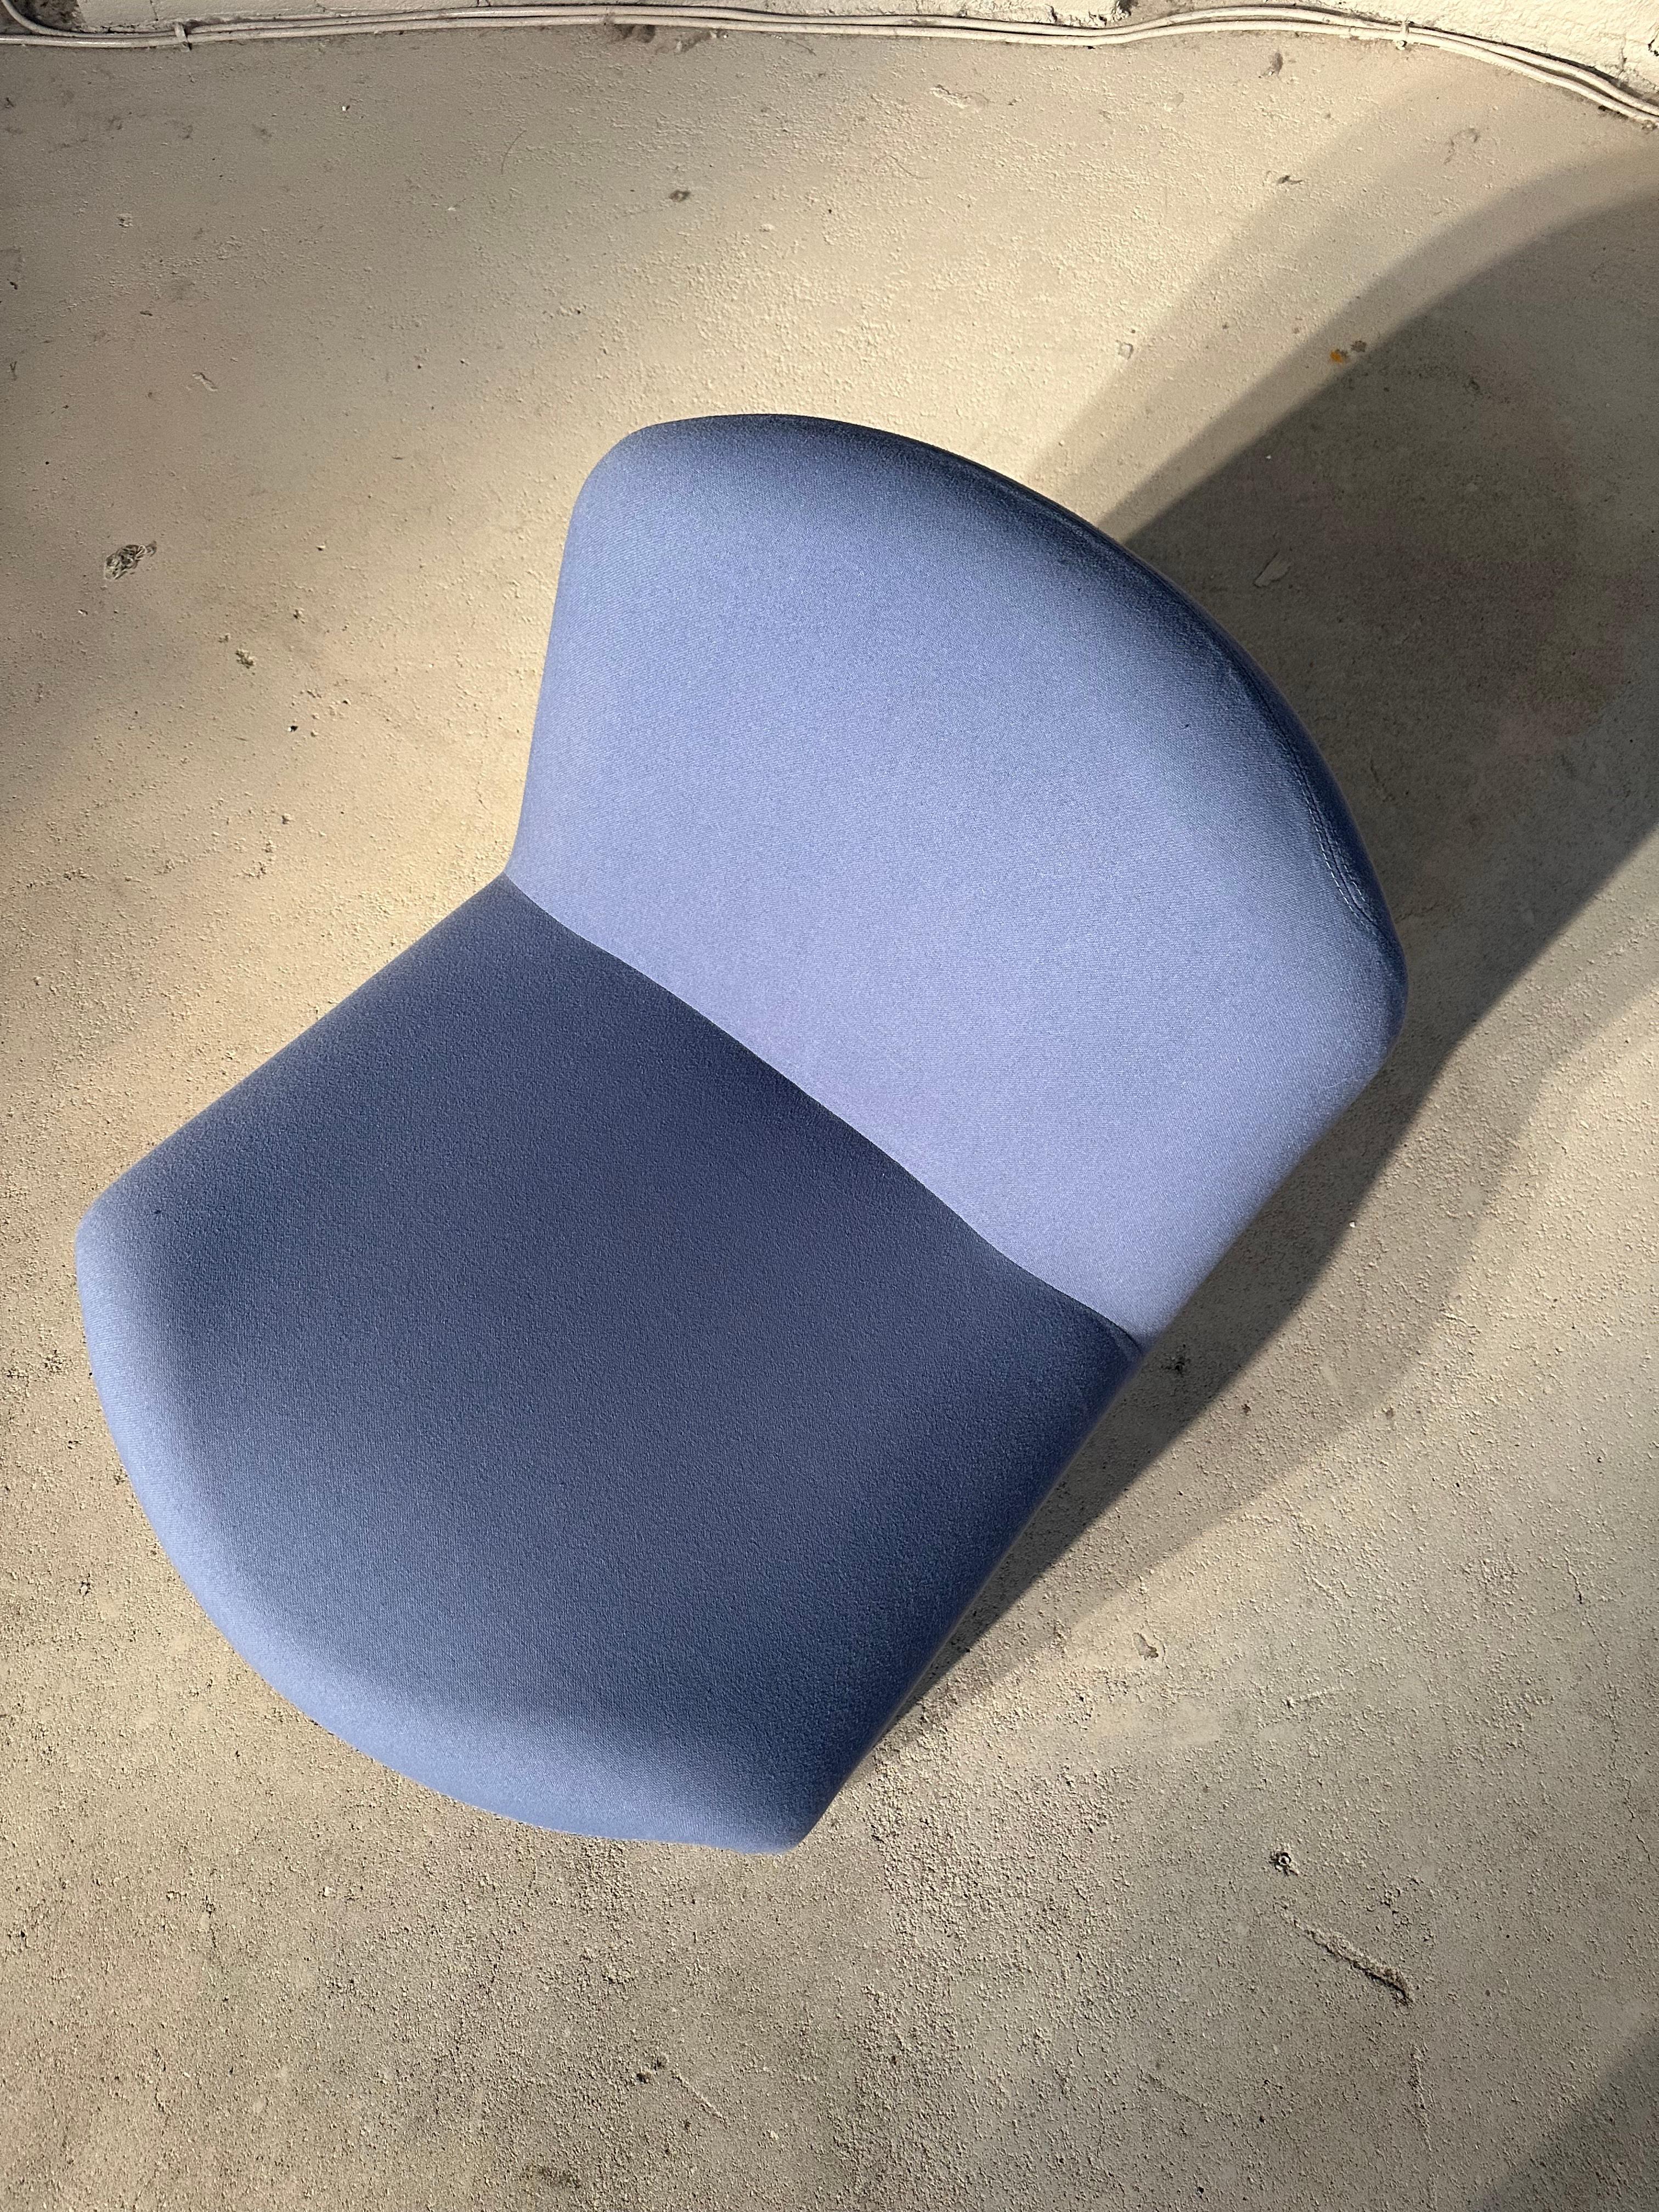 La magnifique chaise Alky aux courbes organiques, conçue par Giancarlo Piretti en 1970 et produite par Castelli et Artifort. Dans un tissu bleu d'origine et dans un état vintage exceptionnel.

Nous avons trouvé ce bijou dans un tissu original lors